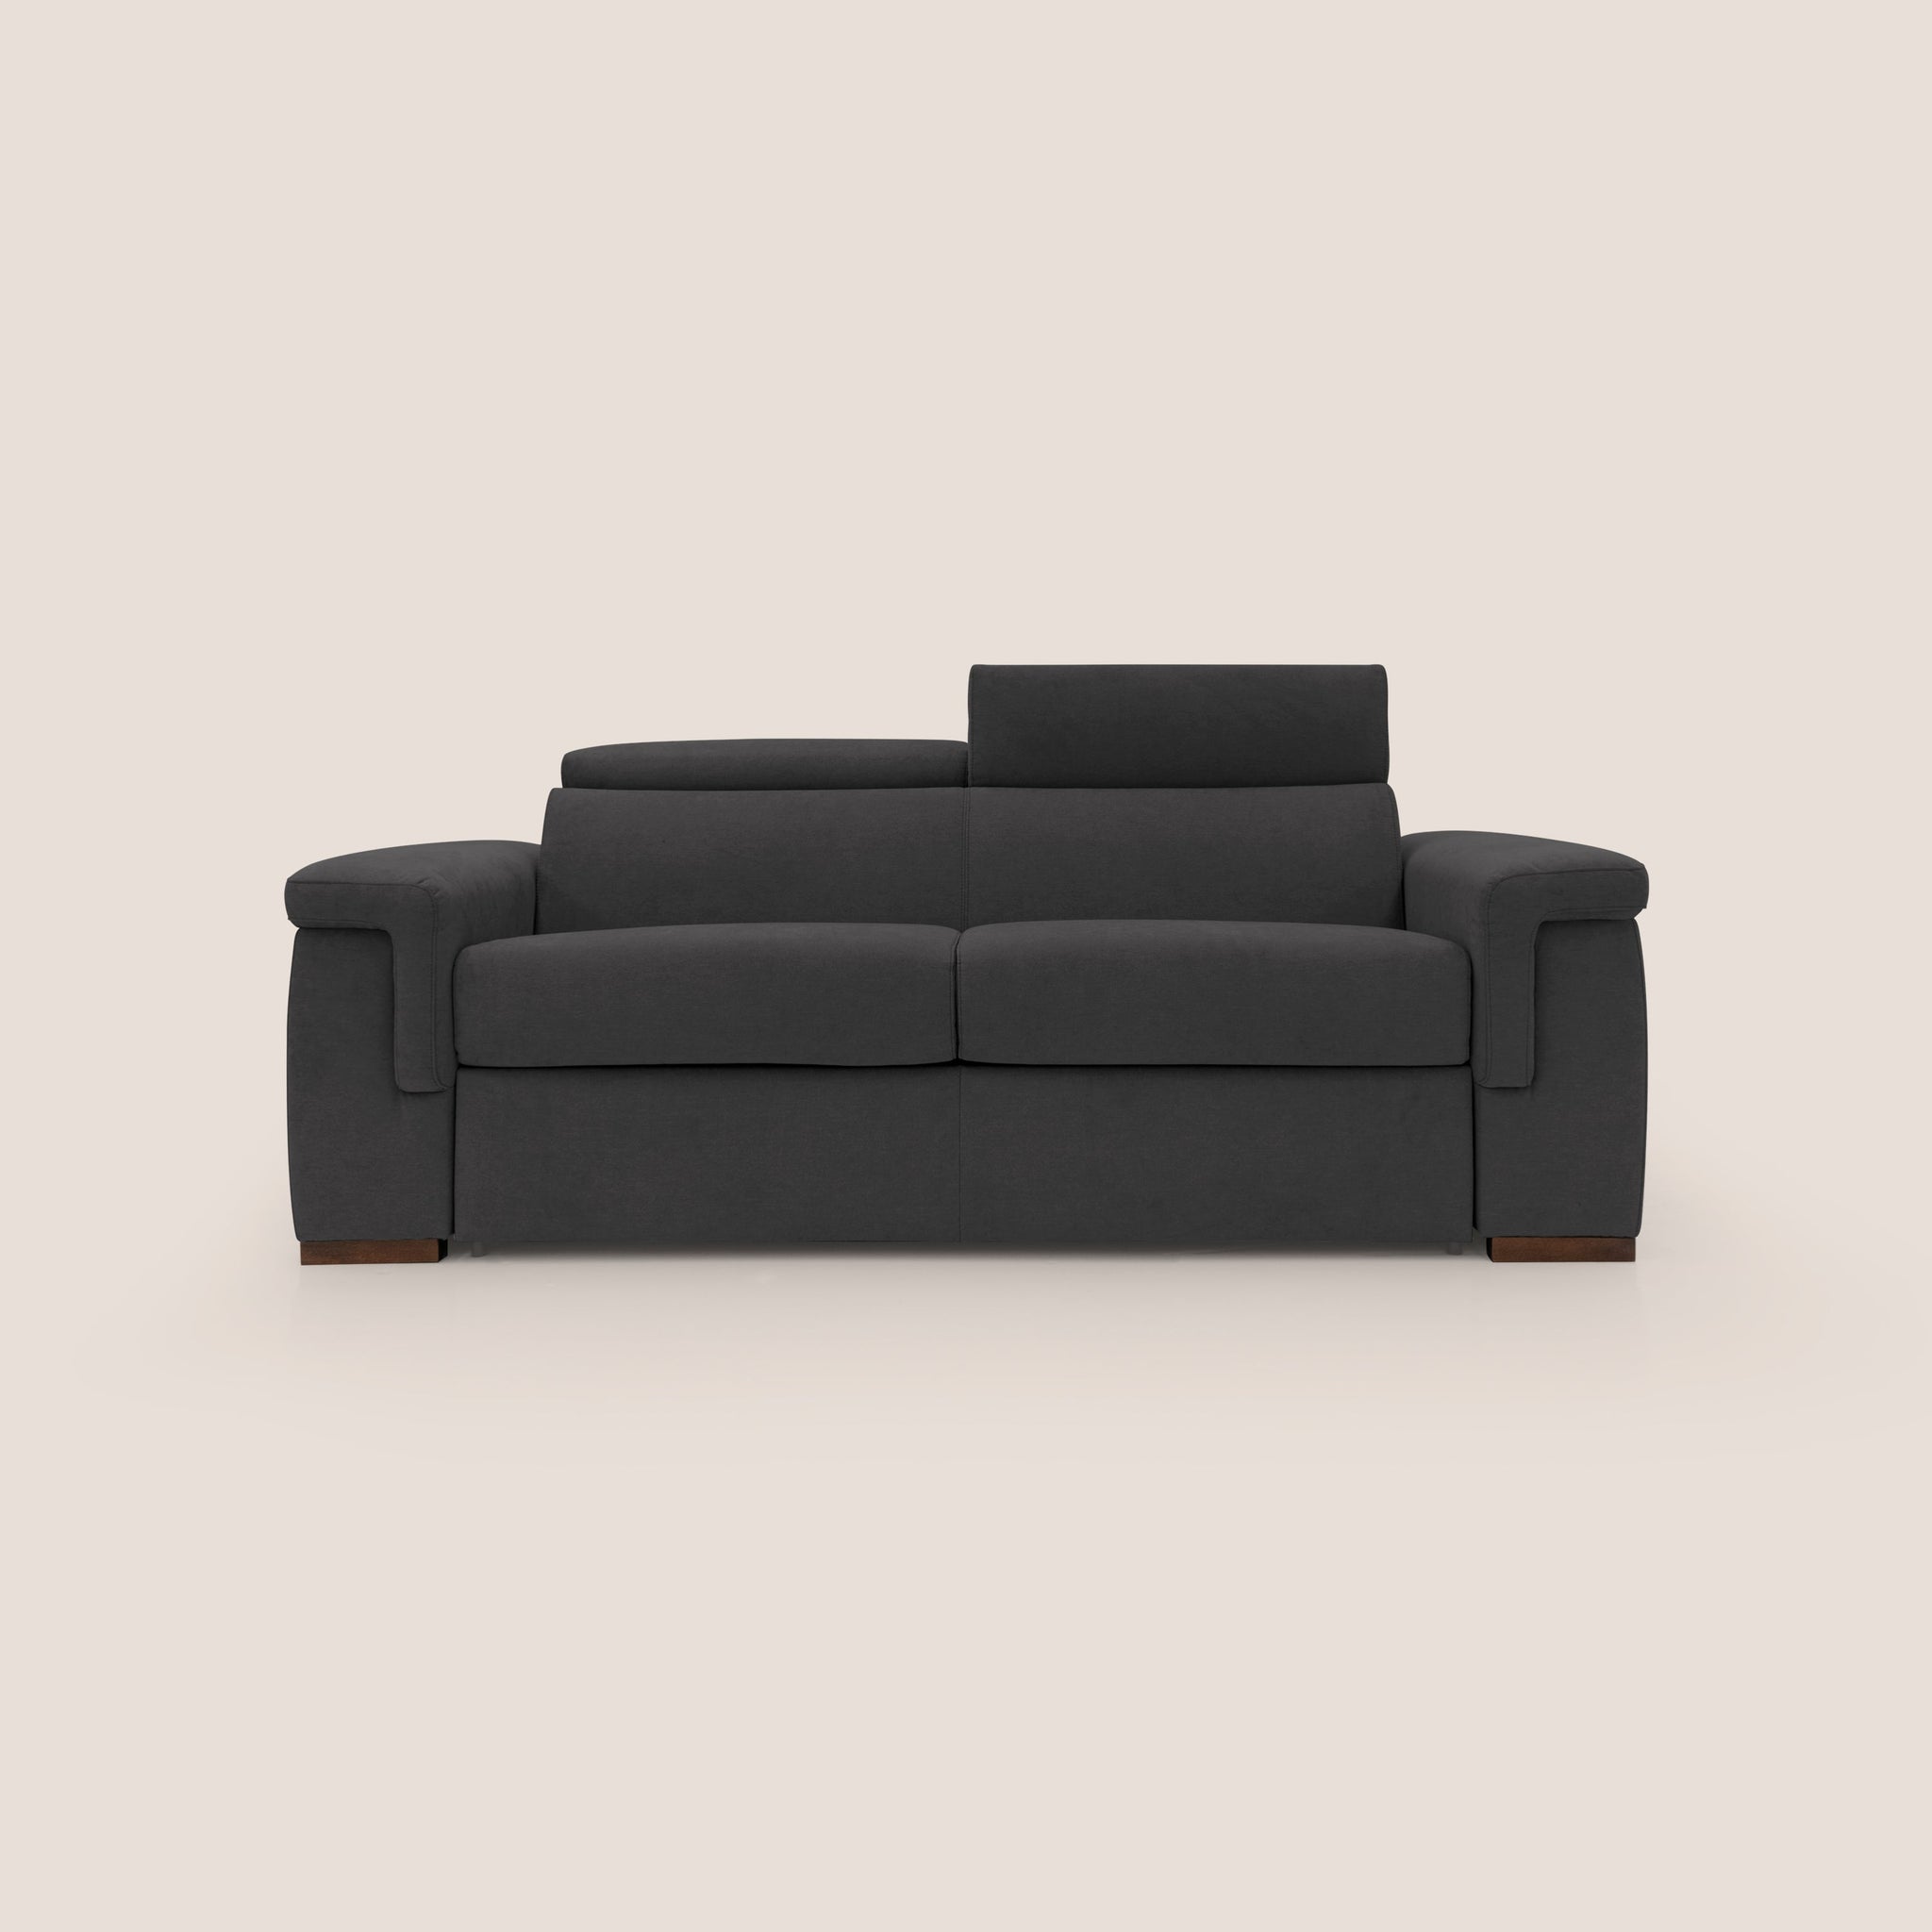 Giunone divano letto 240 cm (mat. 160x197 cm) con DOGHE ORTOPEDICHE, materasso alto h16 cm e poggiatesta reclinabili in tessuto impermeabile T02 NERO